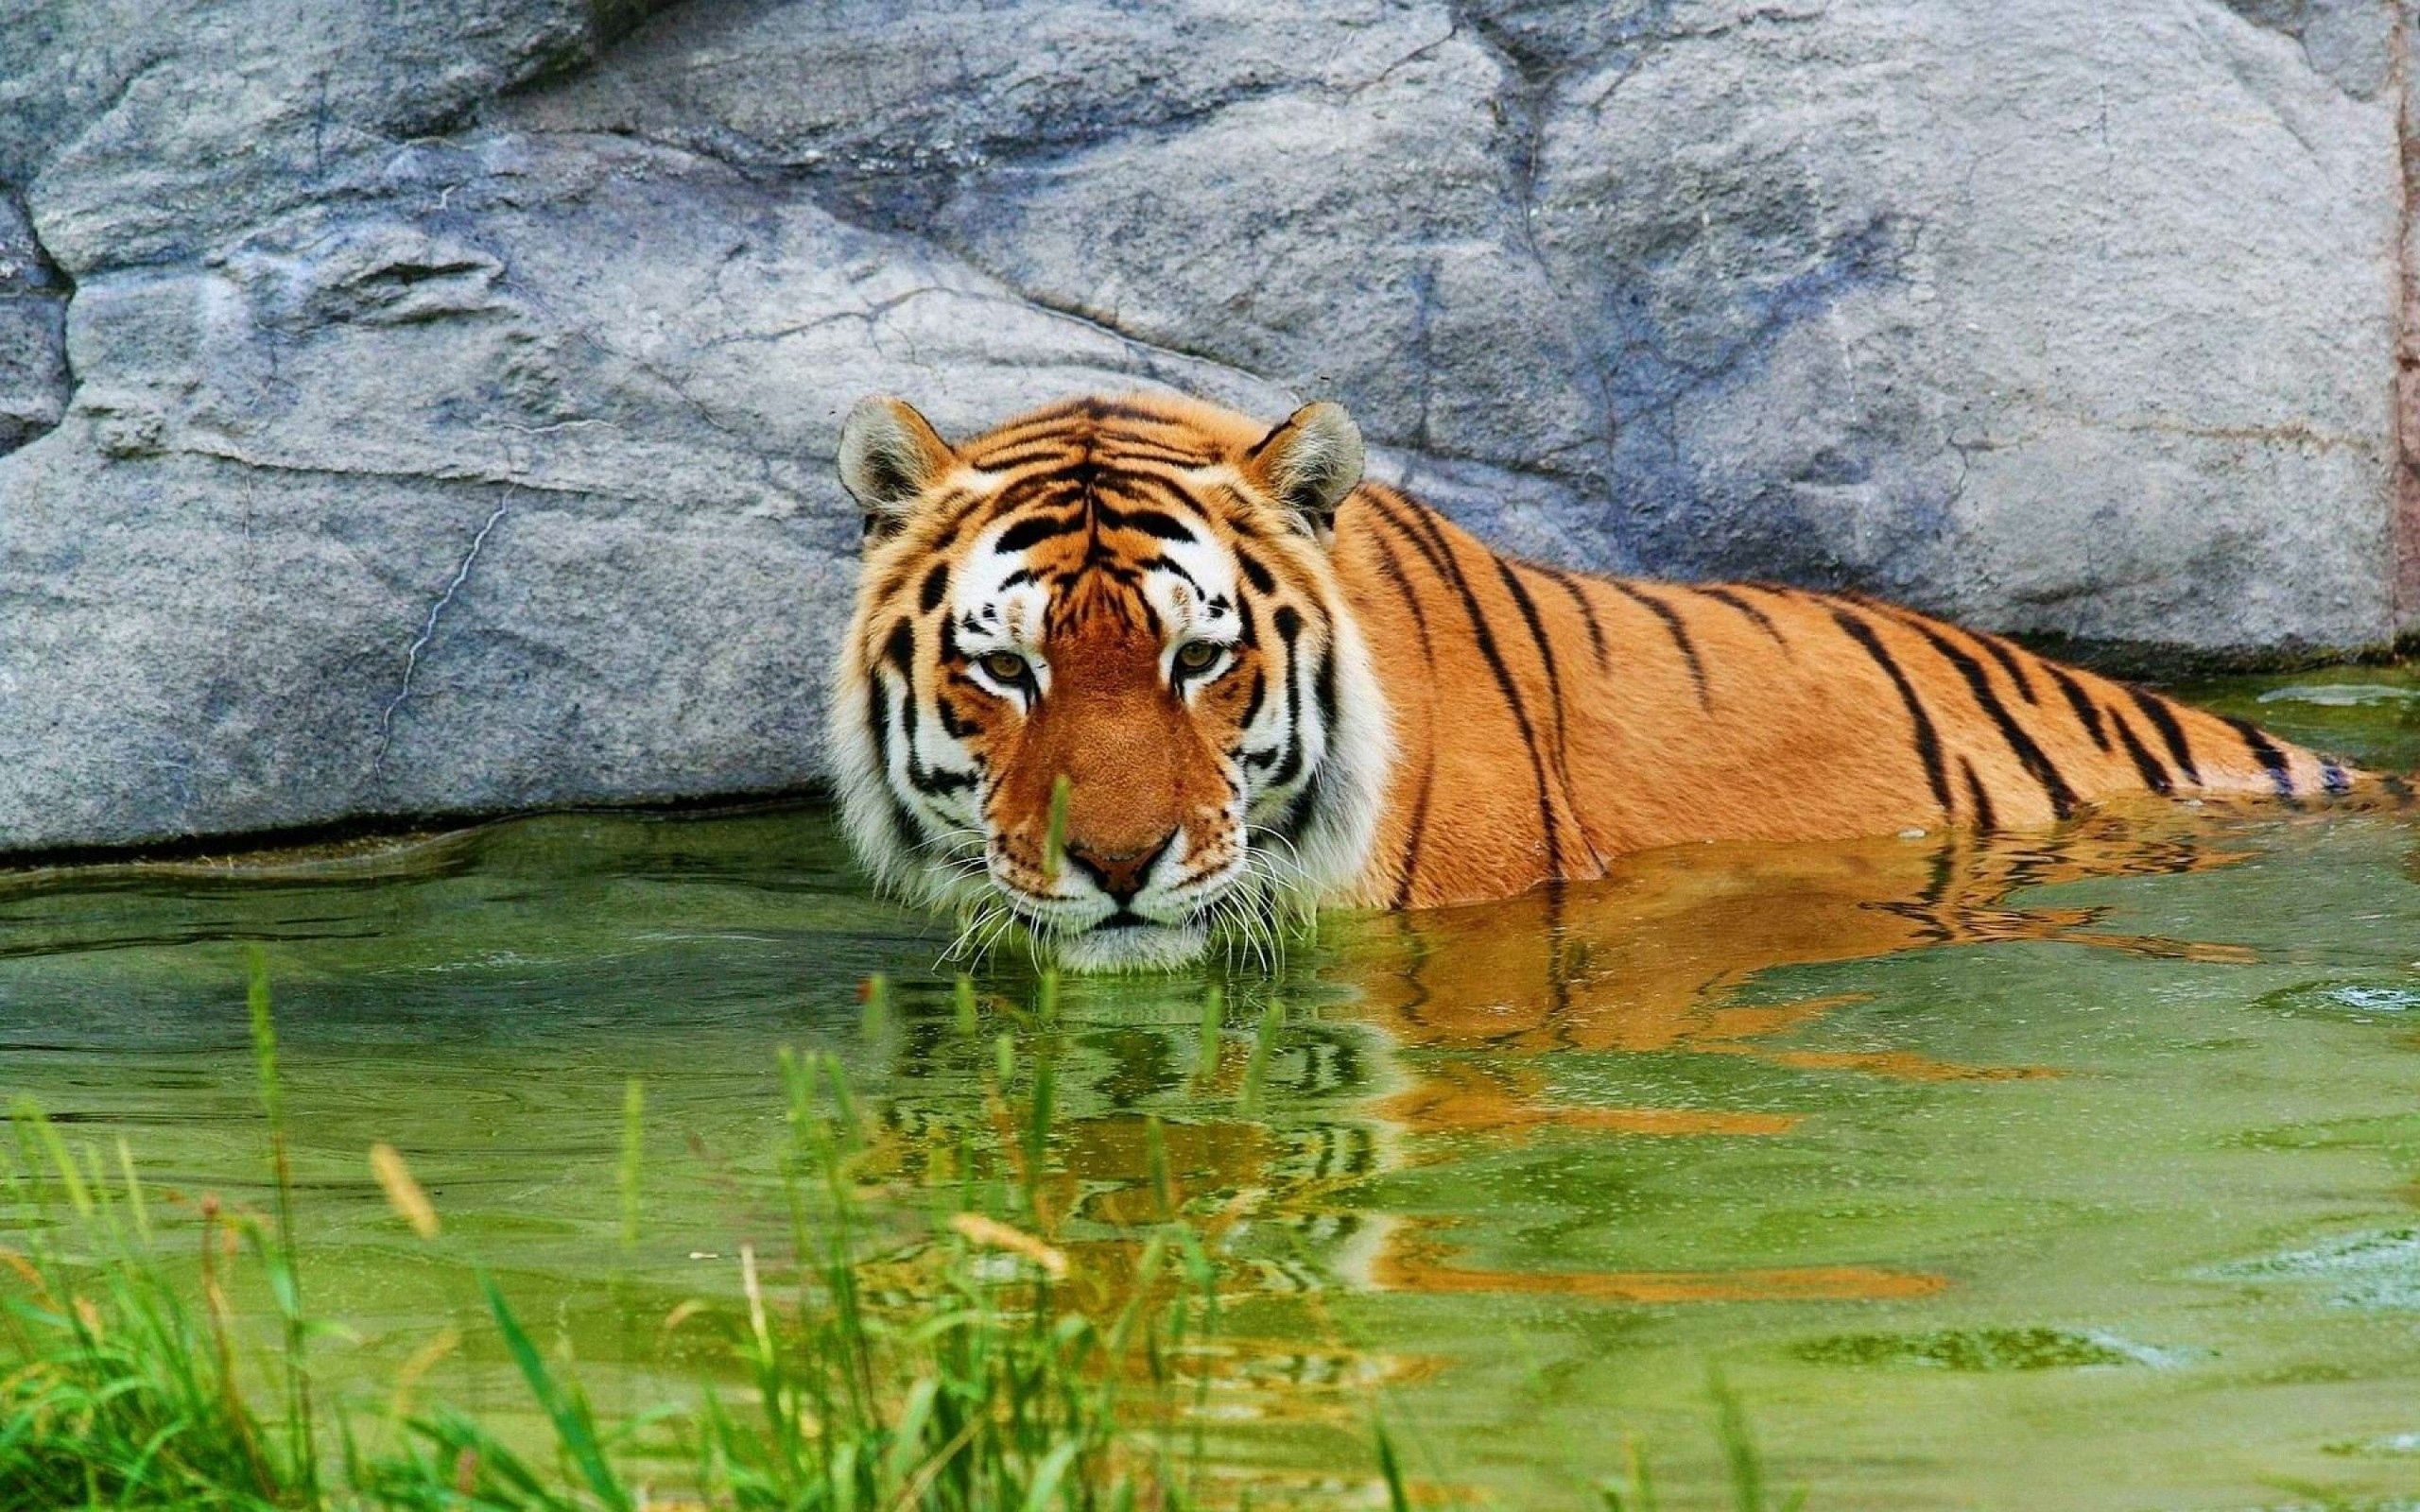 114975 Salvapantallas y fondos de pantalla Tigre en tu teléfono. Descarga imágenes de animales, agua, stones, tumbarse, mentir, tigre gratis